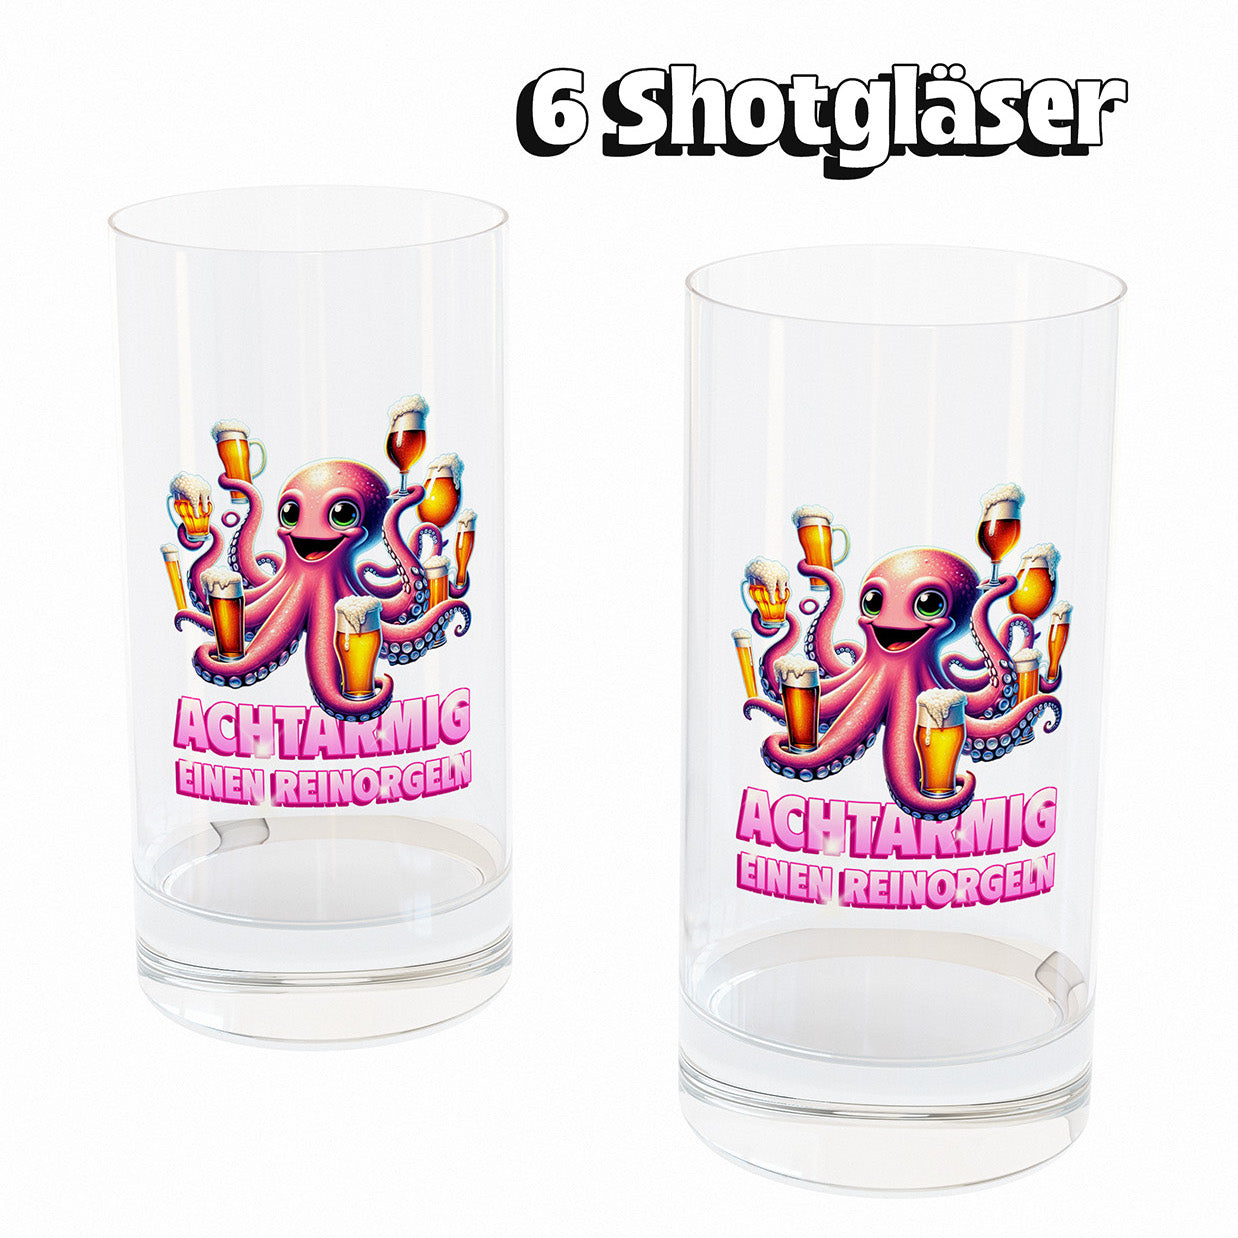 ACHTARMIG - Shotglas 6er Set